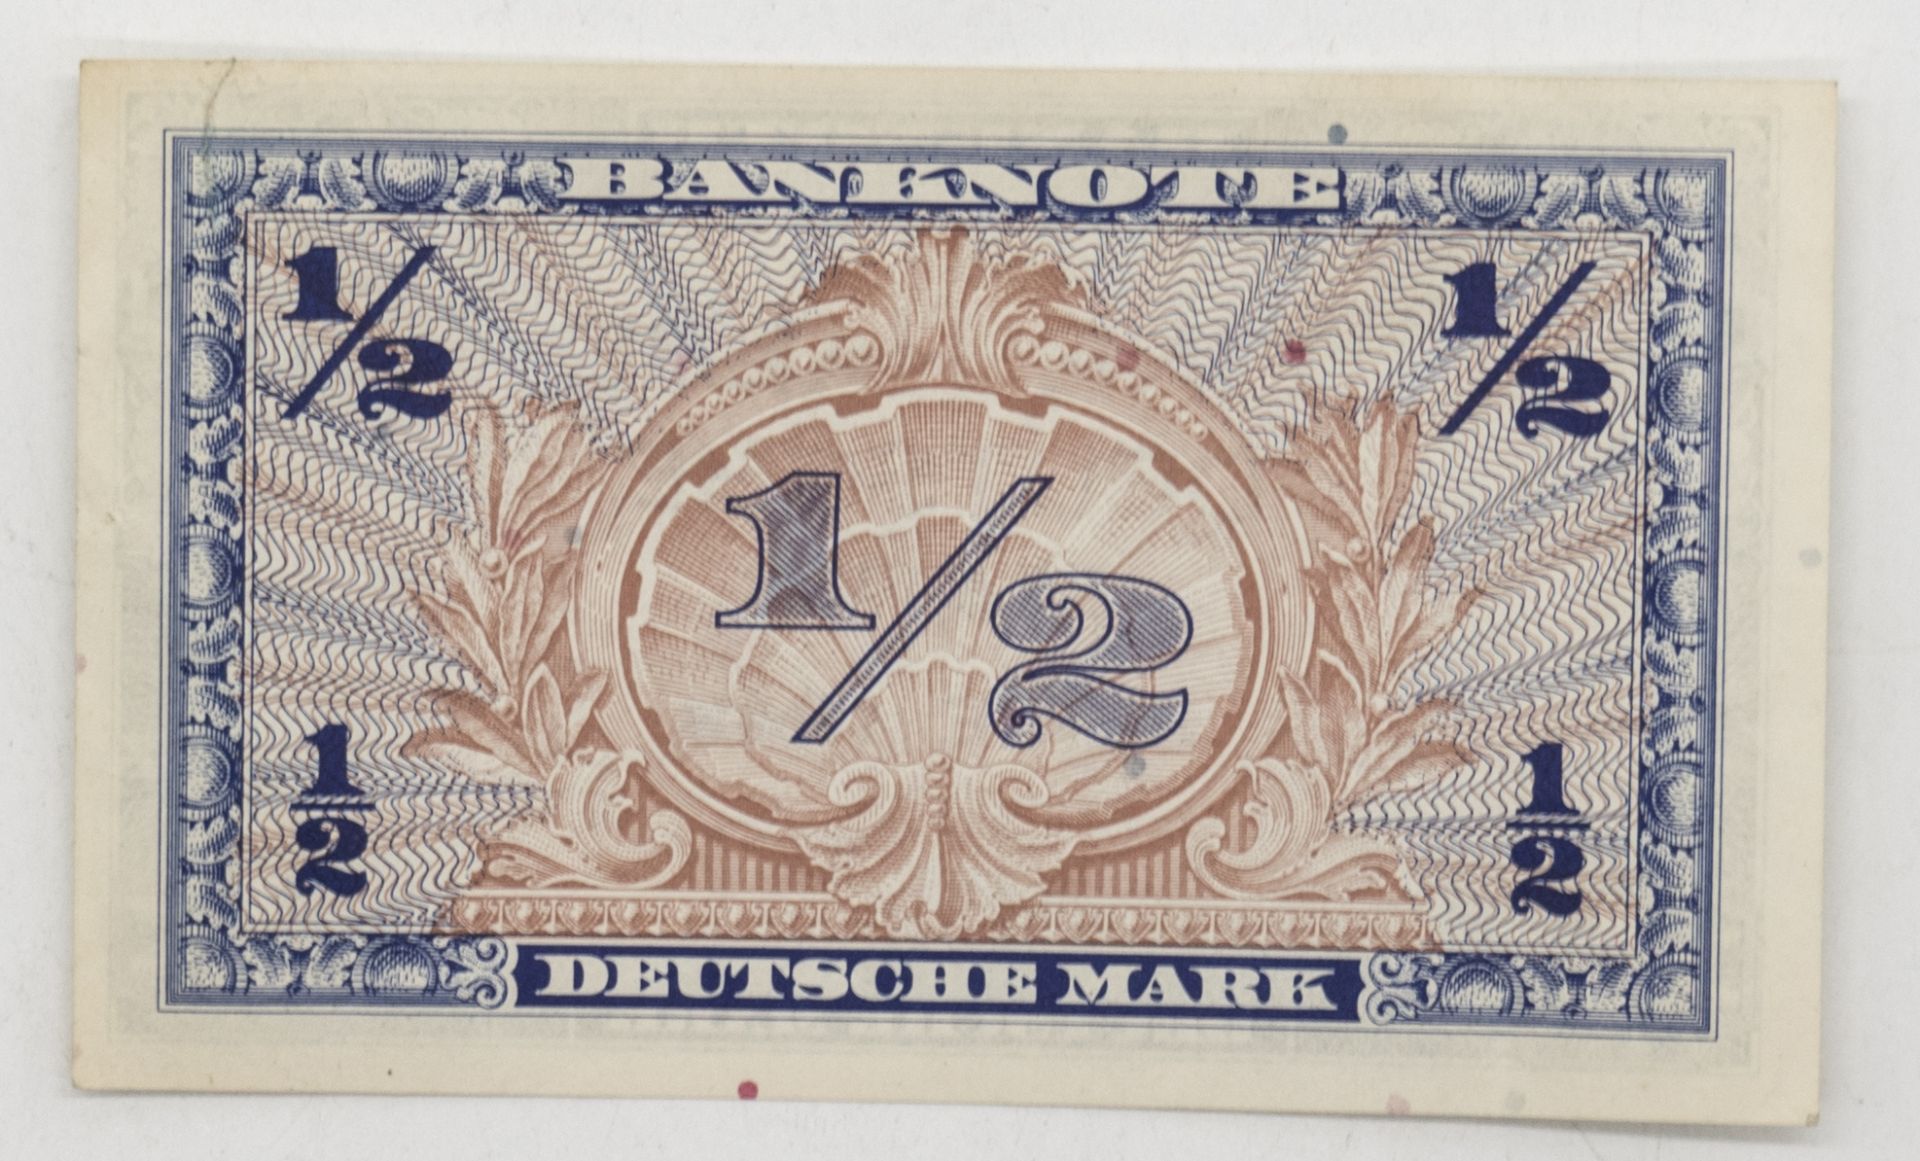 Deutschland 1948 1/2 Deutsche Mark - Banknote. Erhaltung: hervorragend. - Bild 2 aus 2